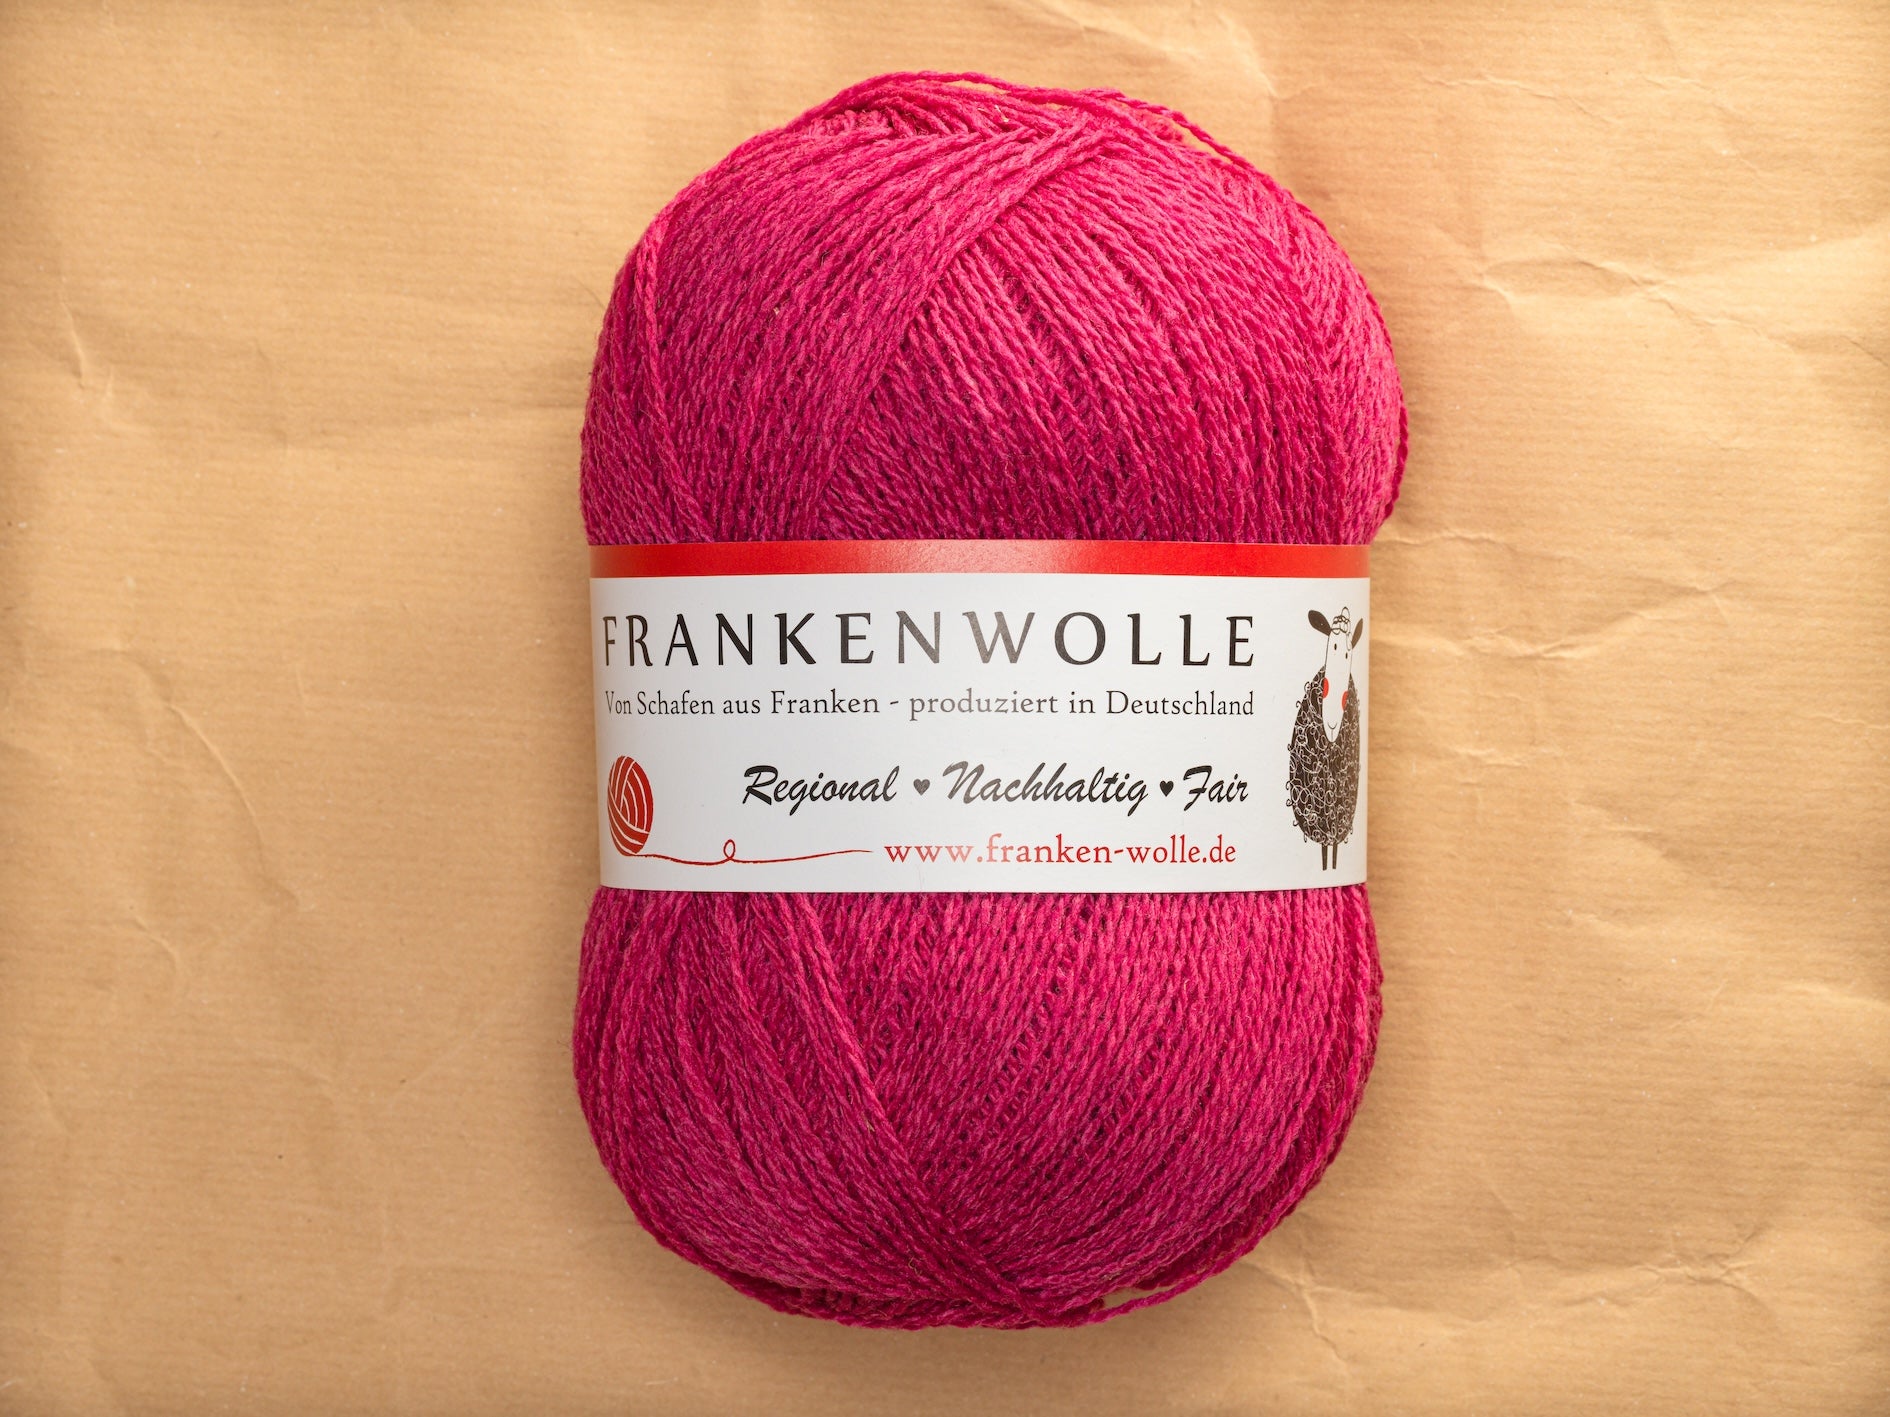 Frankenwolle Merino Garn Pink 400 gefärbt Knäuel